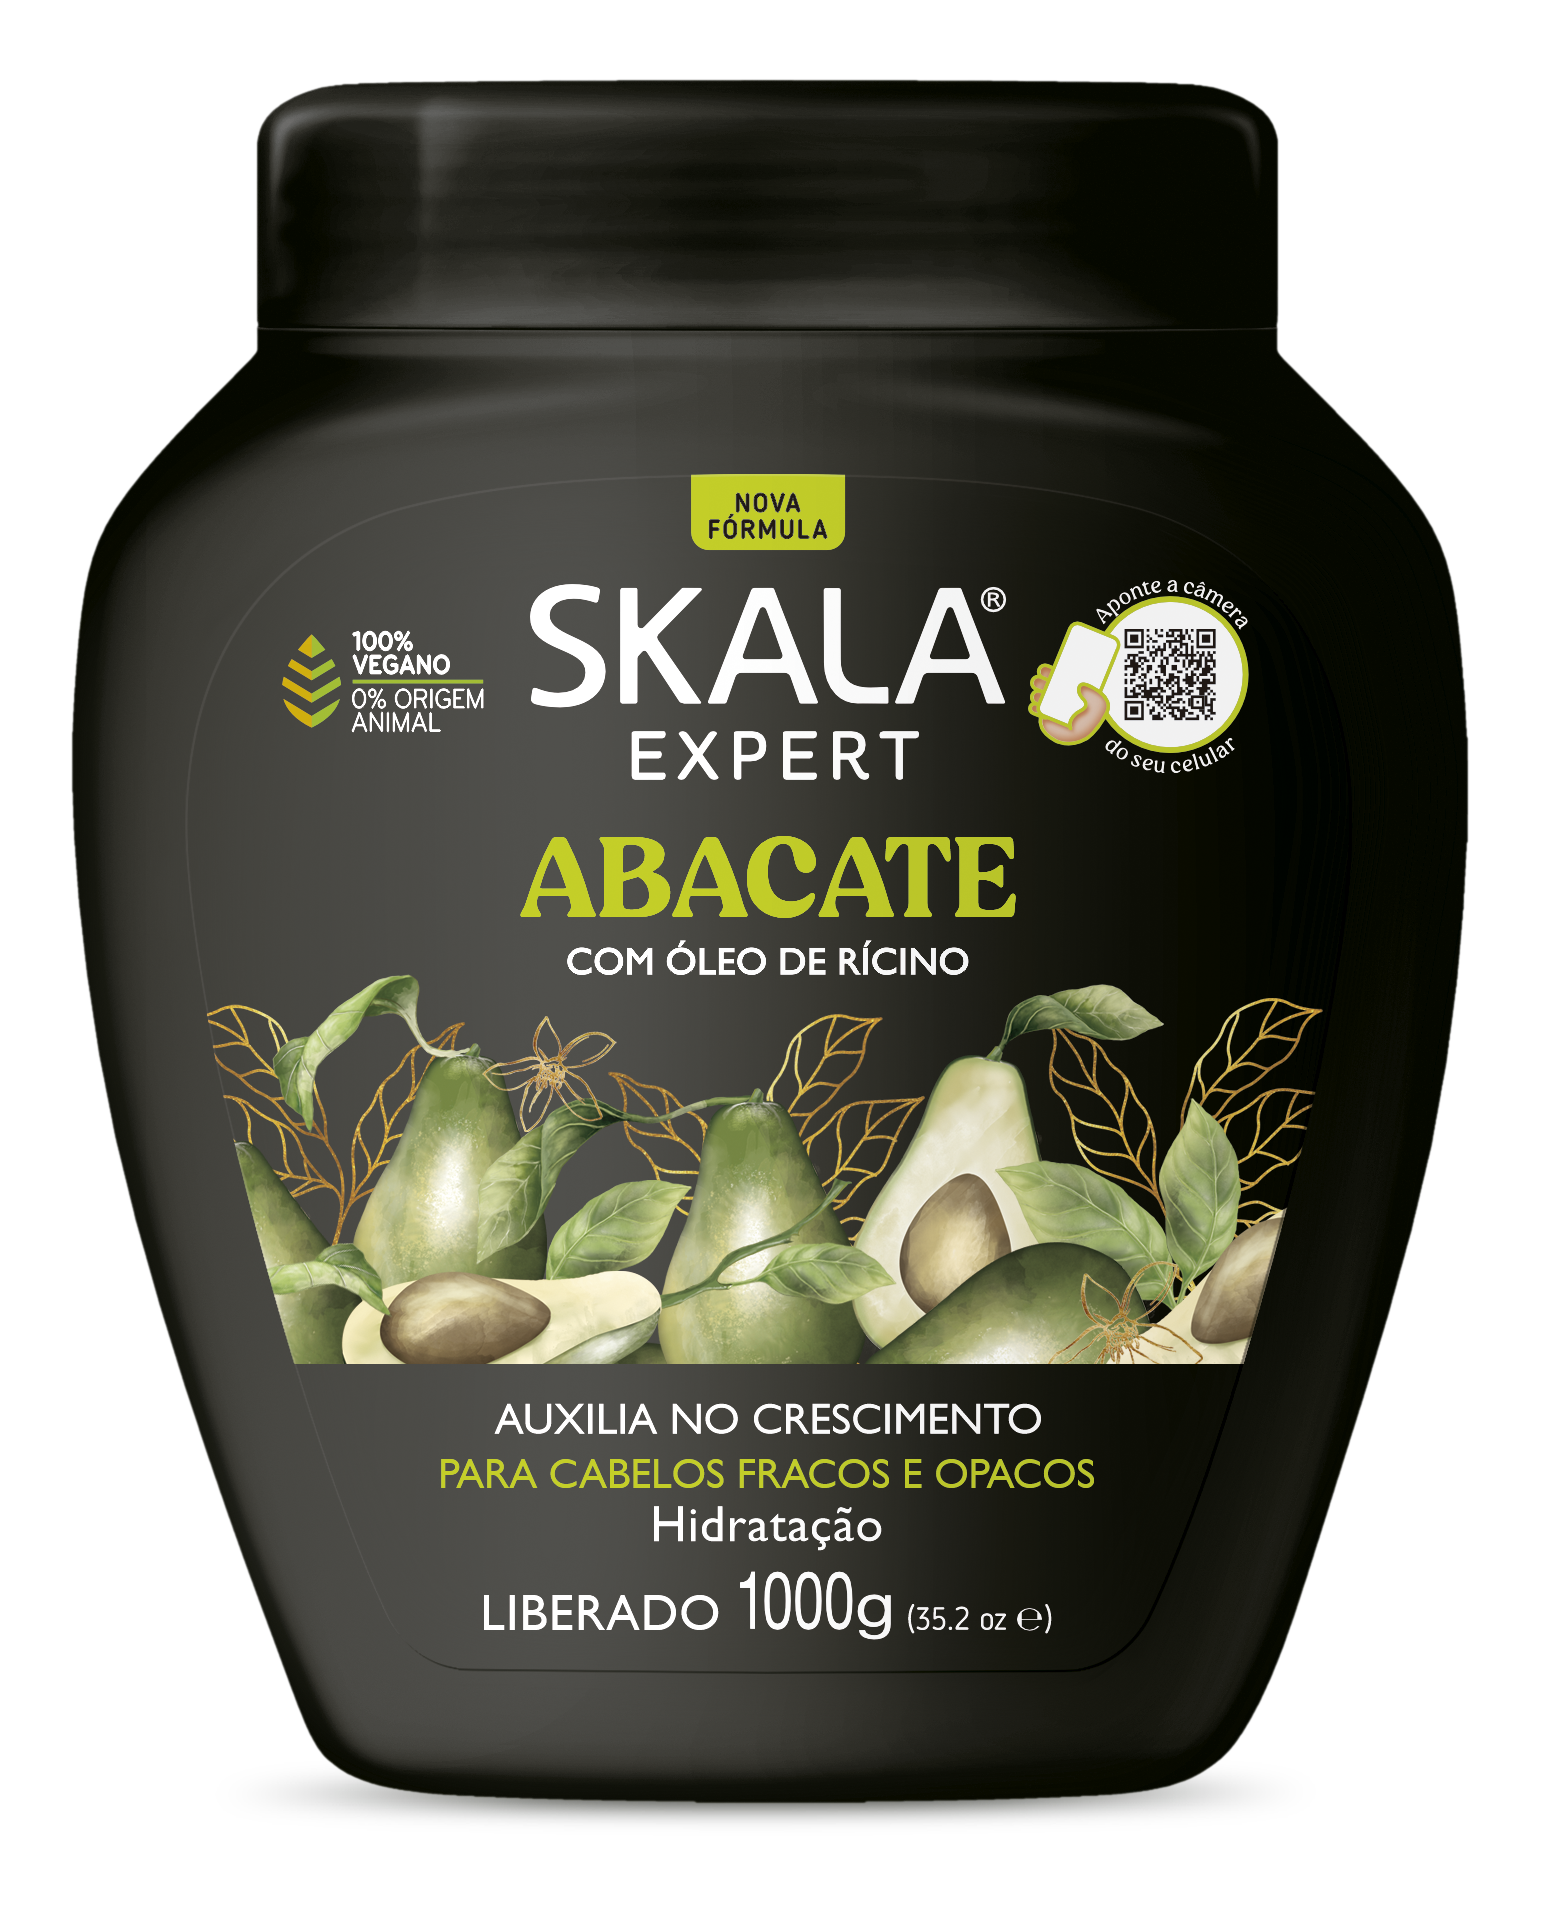 SKALA-Bomba de vitaminas SOS-(1kg) - Winner Price